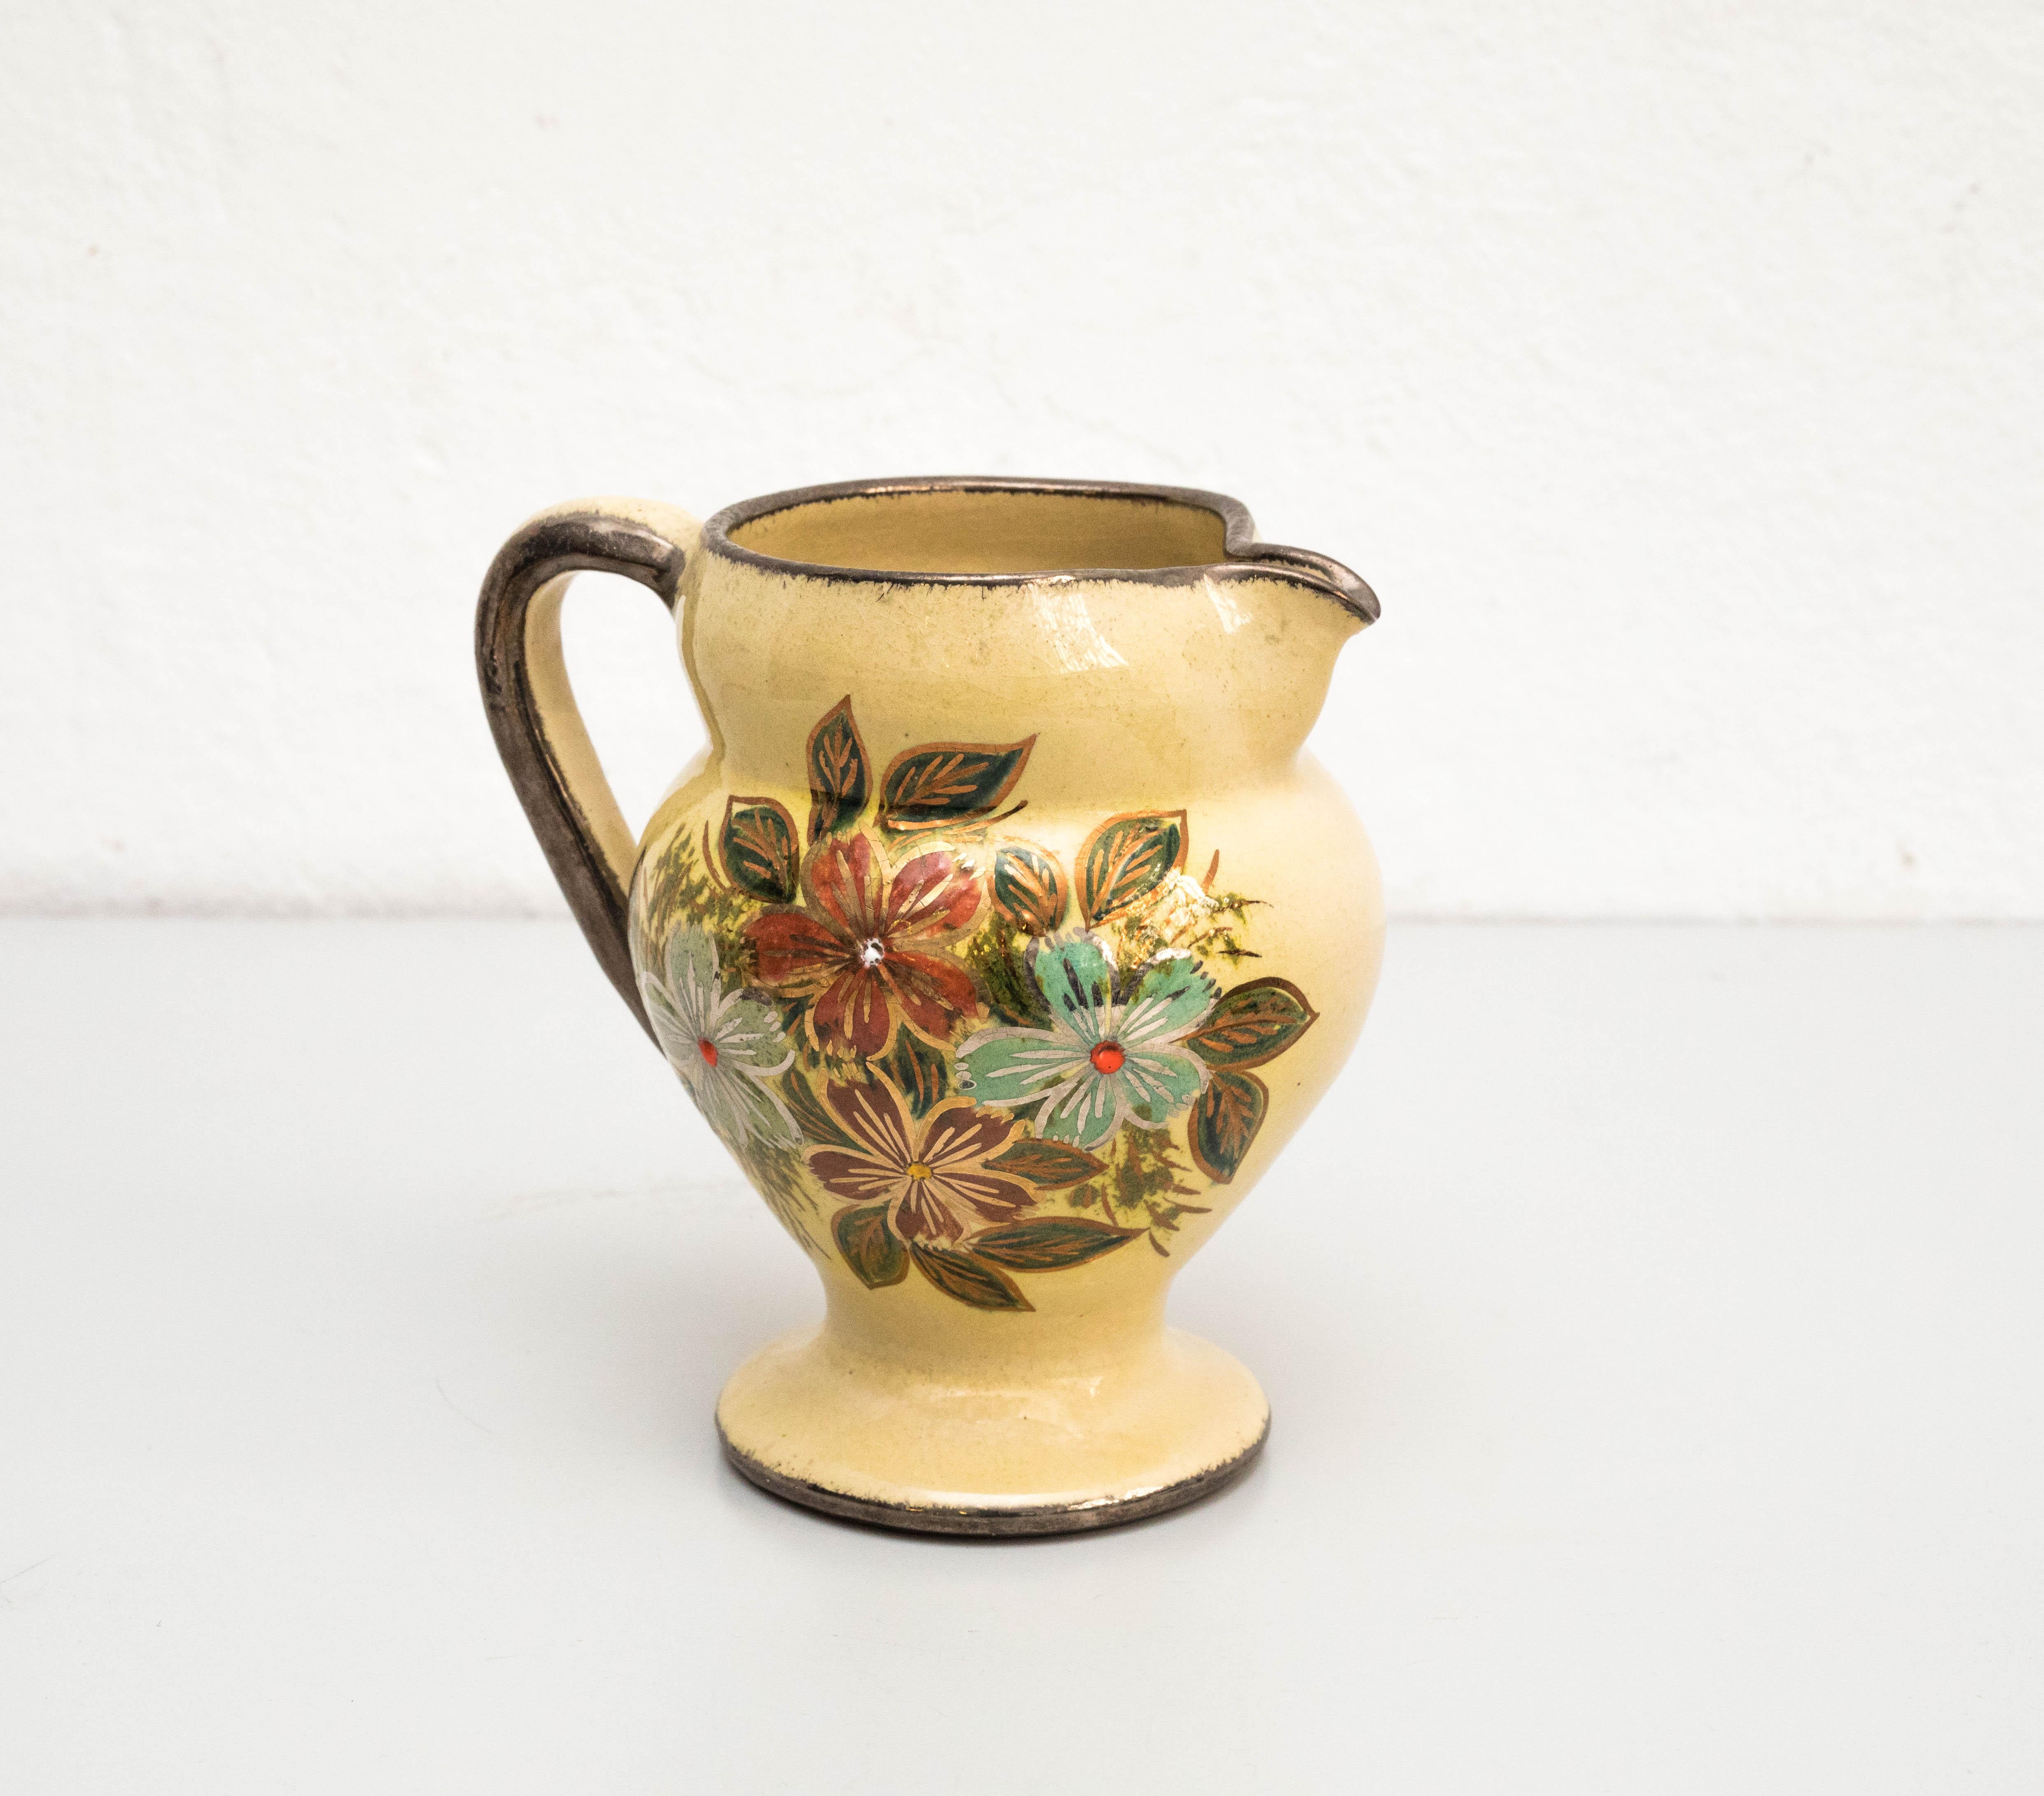 Vase en céramique peint à la main par l'artiste catalan Diaz Costa, vers 1960.
Fabriqué en Espagne.
Signé.

En état original, avec une usure mineure correspondant à l'âge et à l'utilisation, préservant une belle patine.